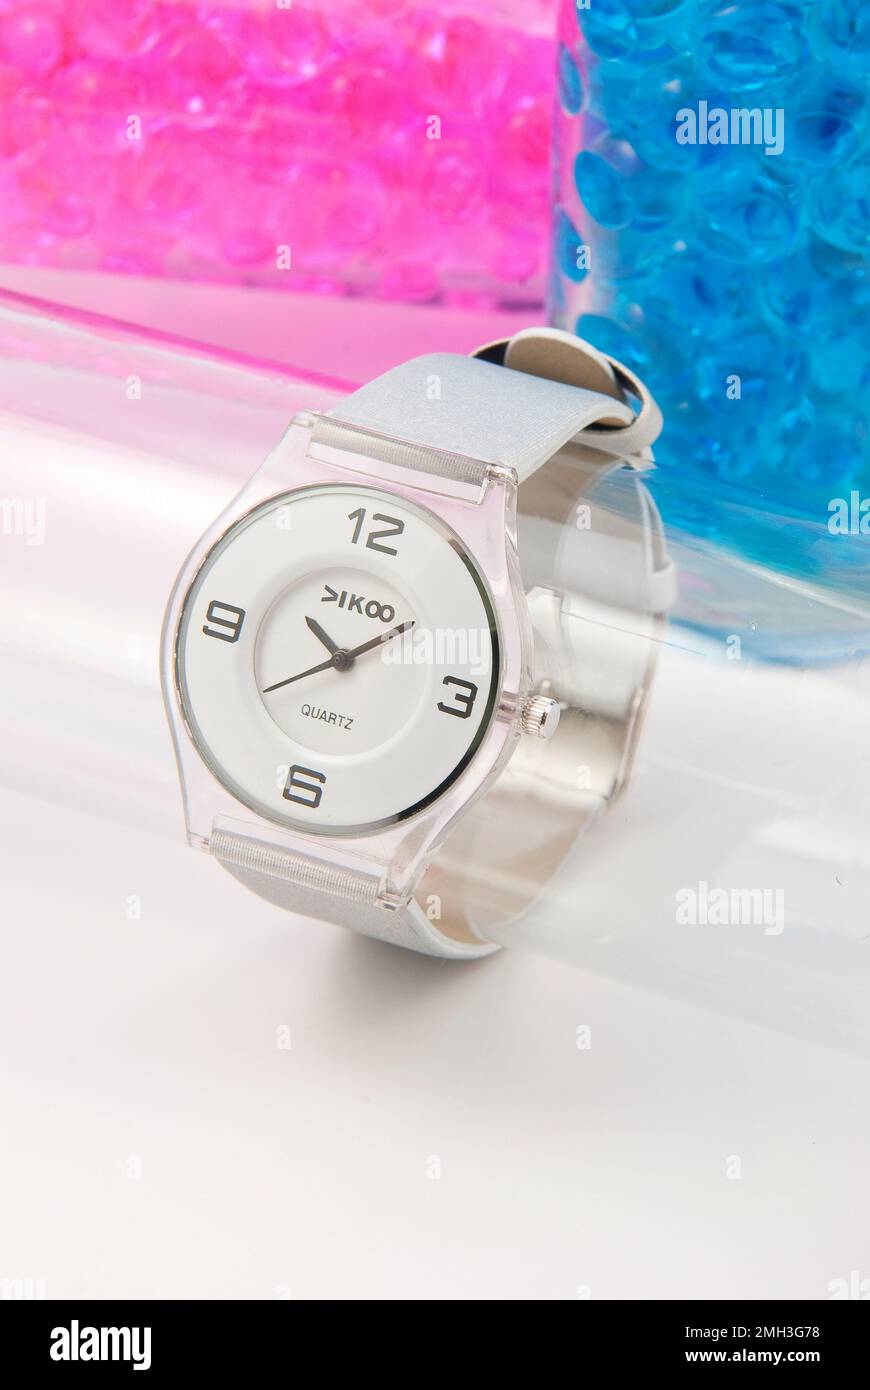 Beautiful white analog wrist watch. Stock Photo